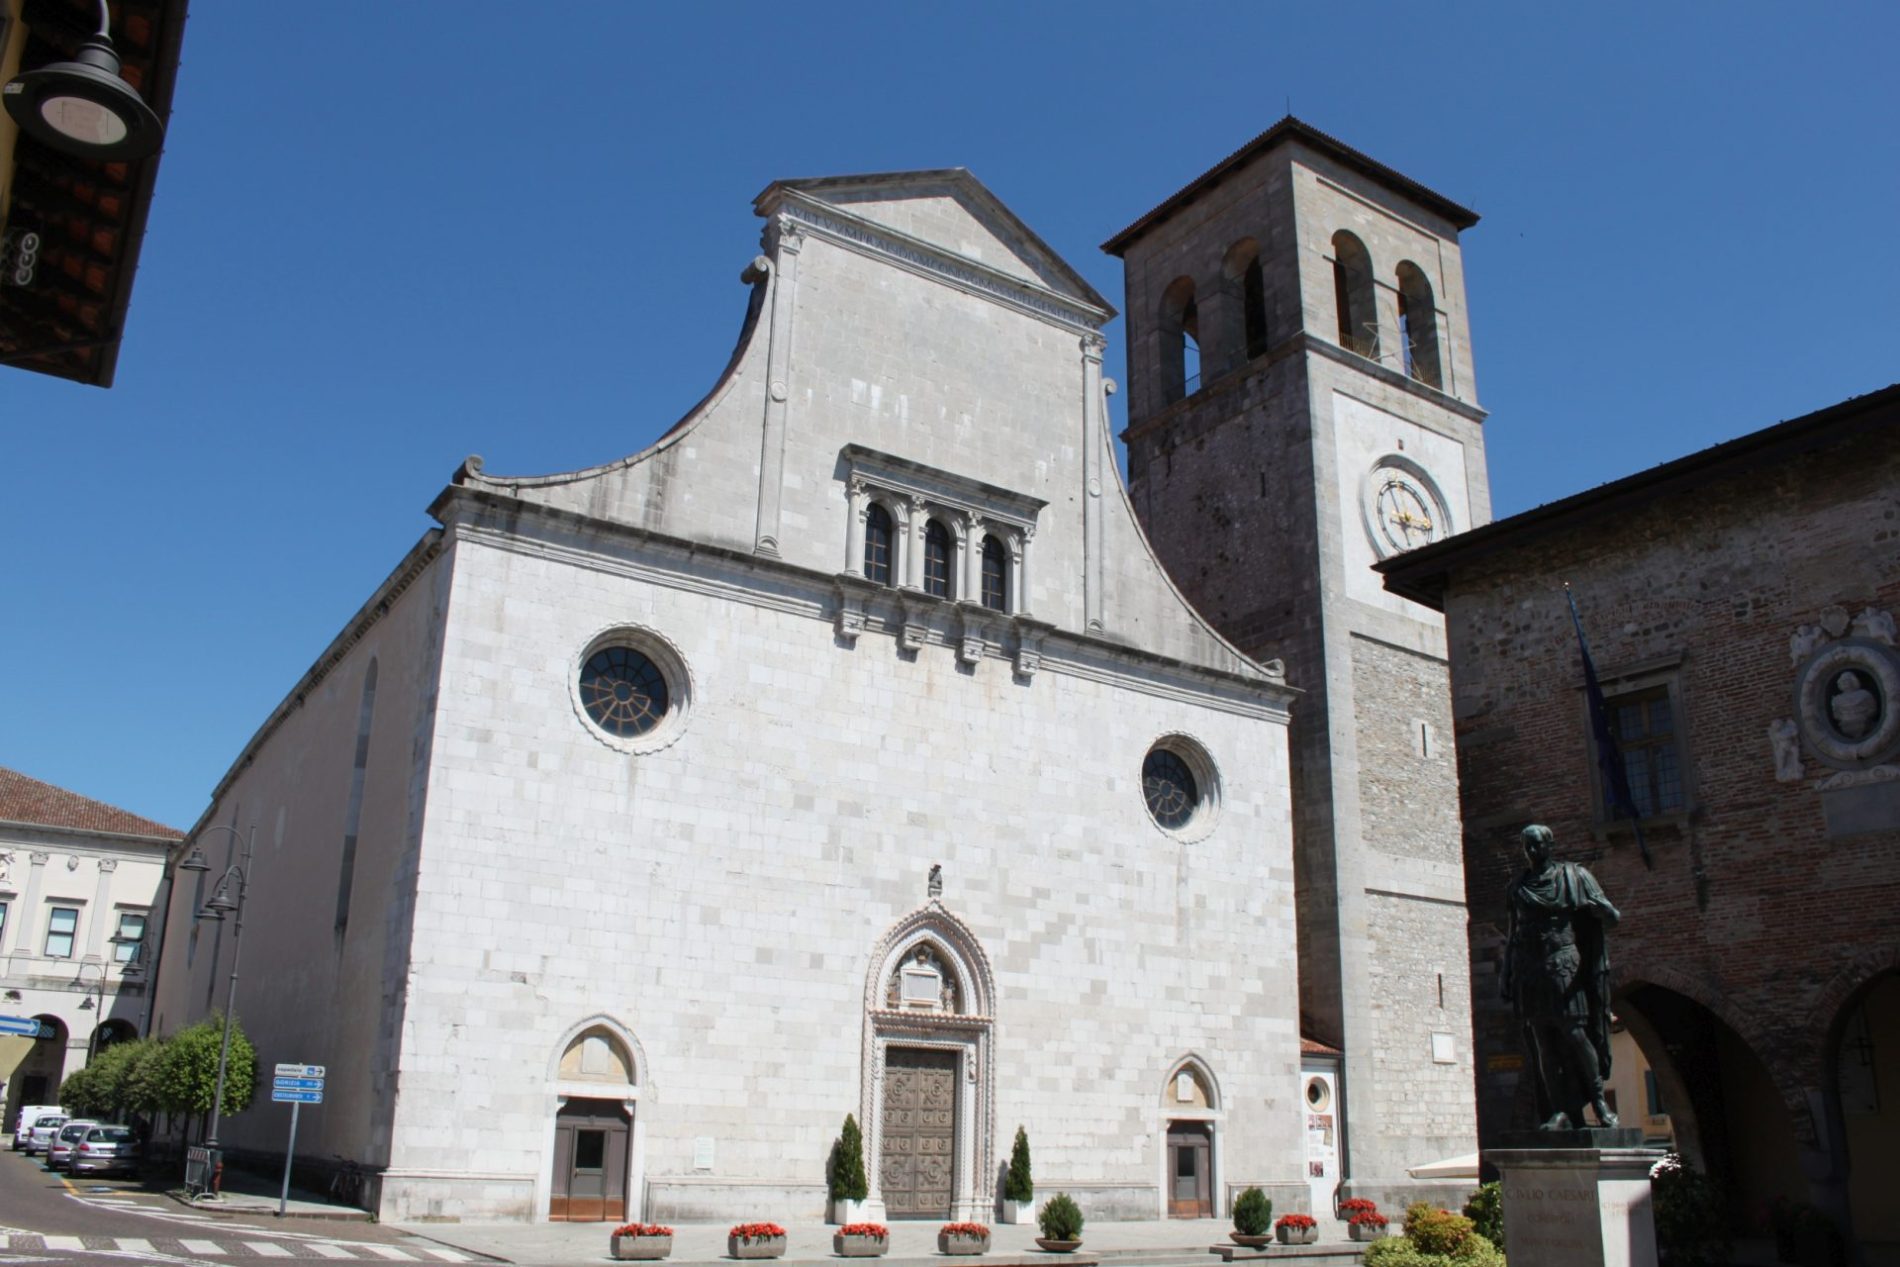 Museo-Cristiano-e-Tesoro-del-Duomo-Cividale-del-Friuli, PromoTurismoFVG(1)